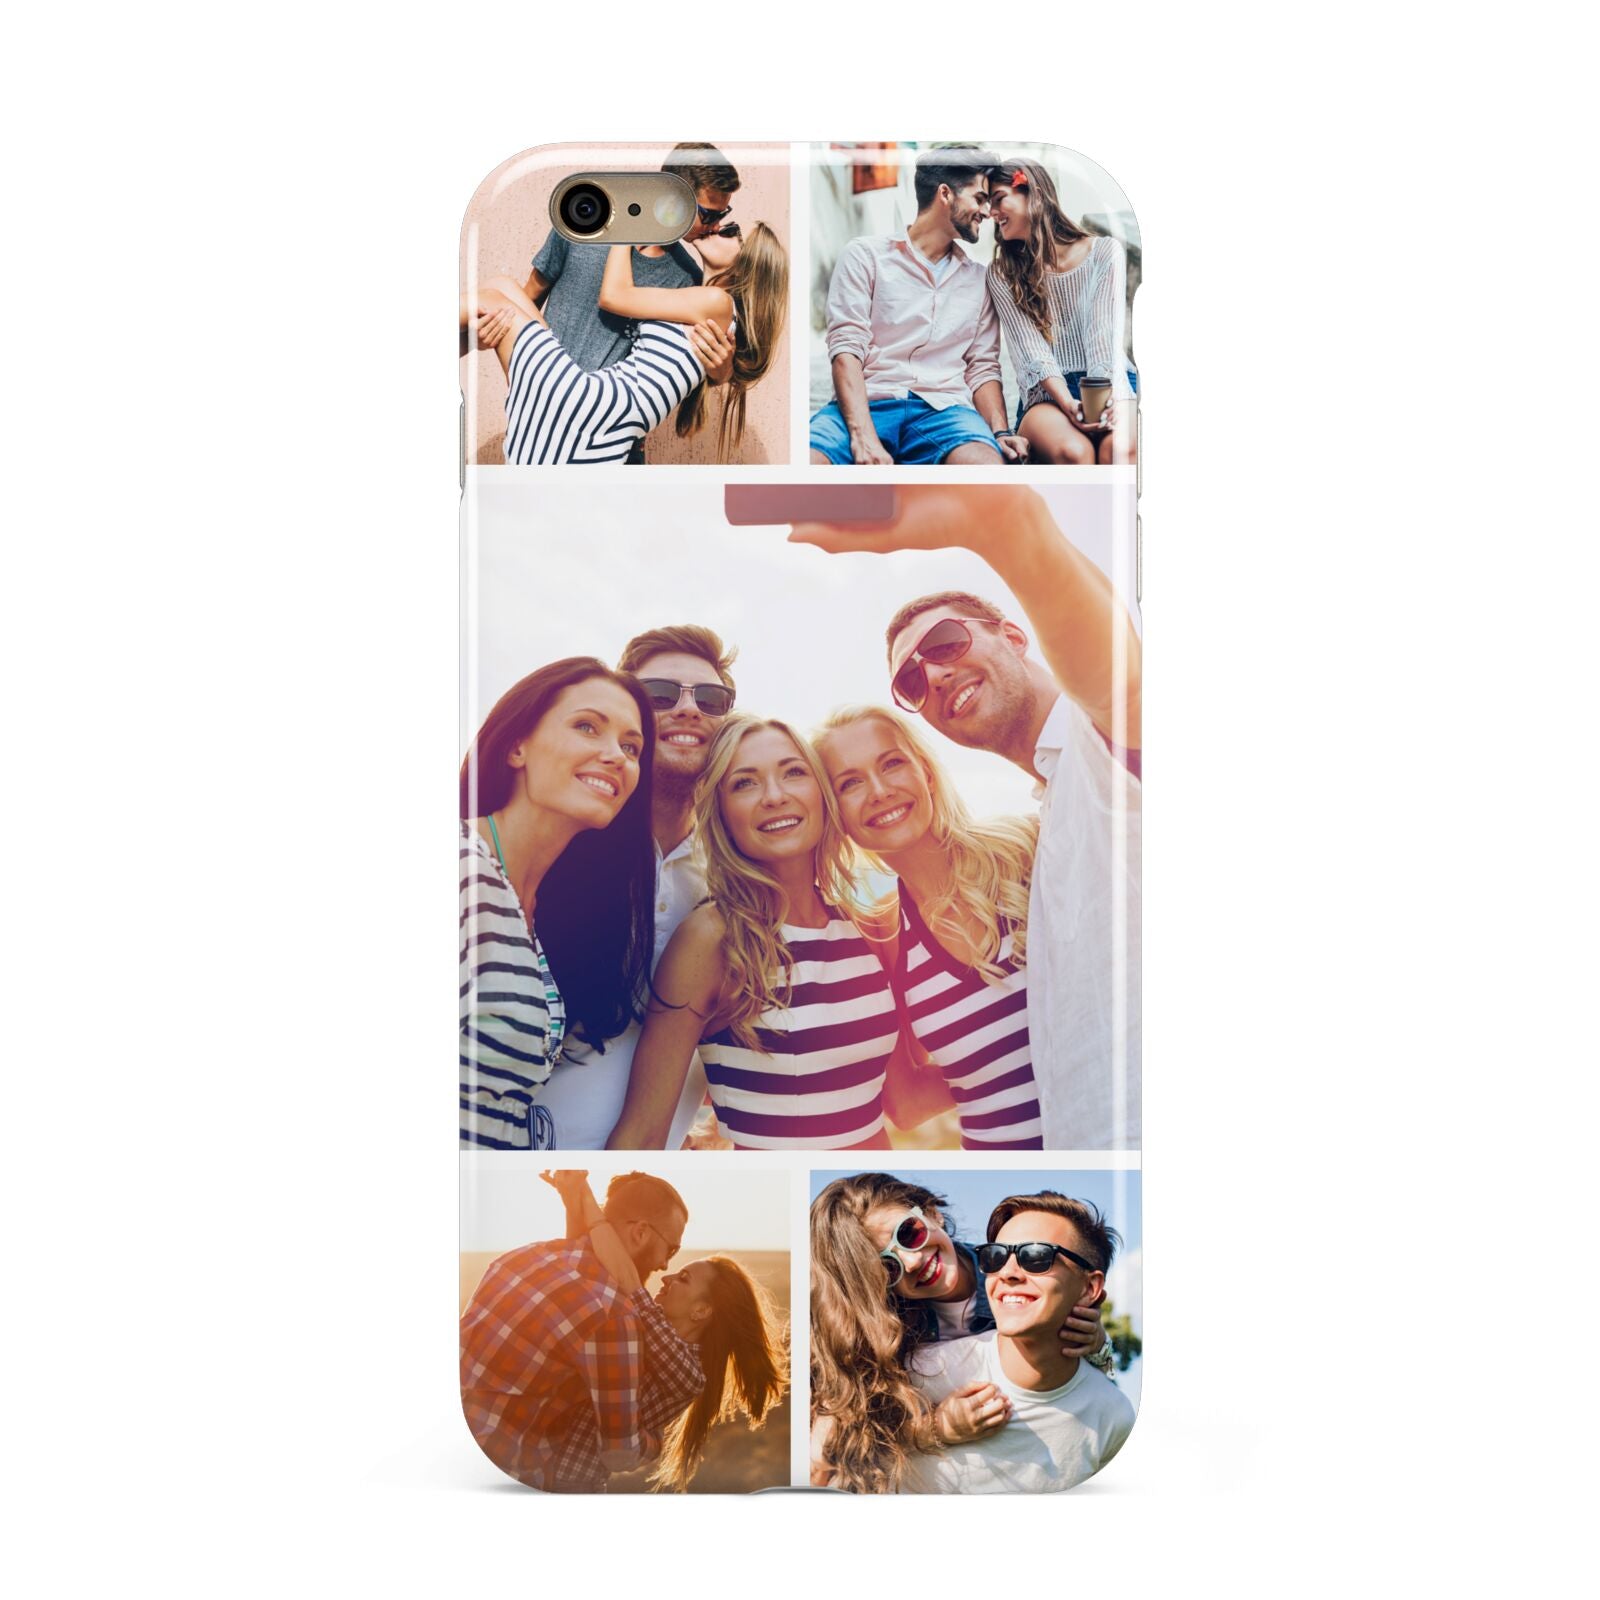 Tile Photo Collage Upload Apple iPhone 6 Plus 3D Tough Case